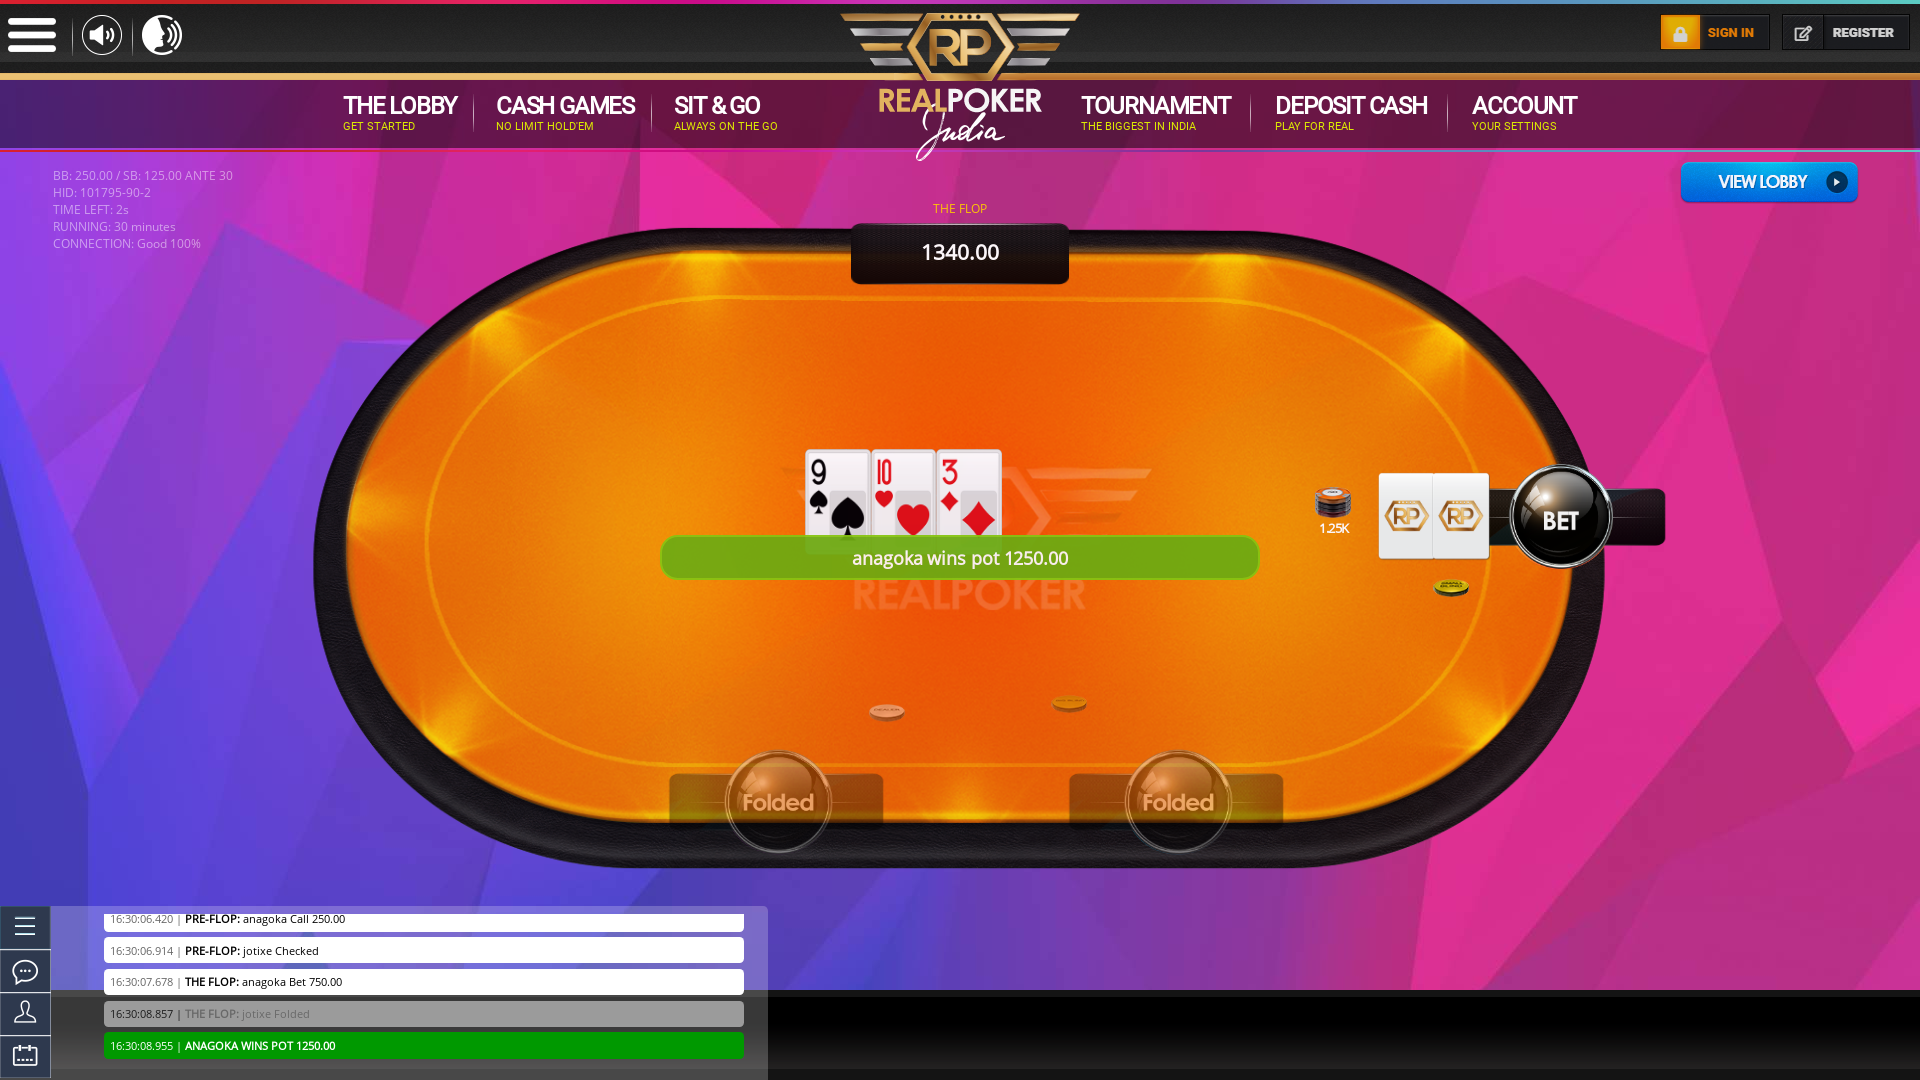 Goa online Indian poker